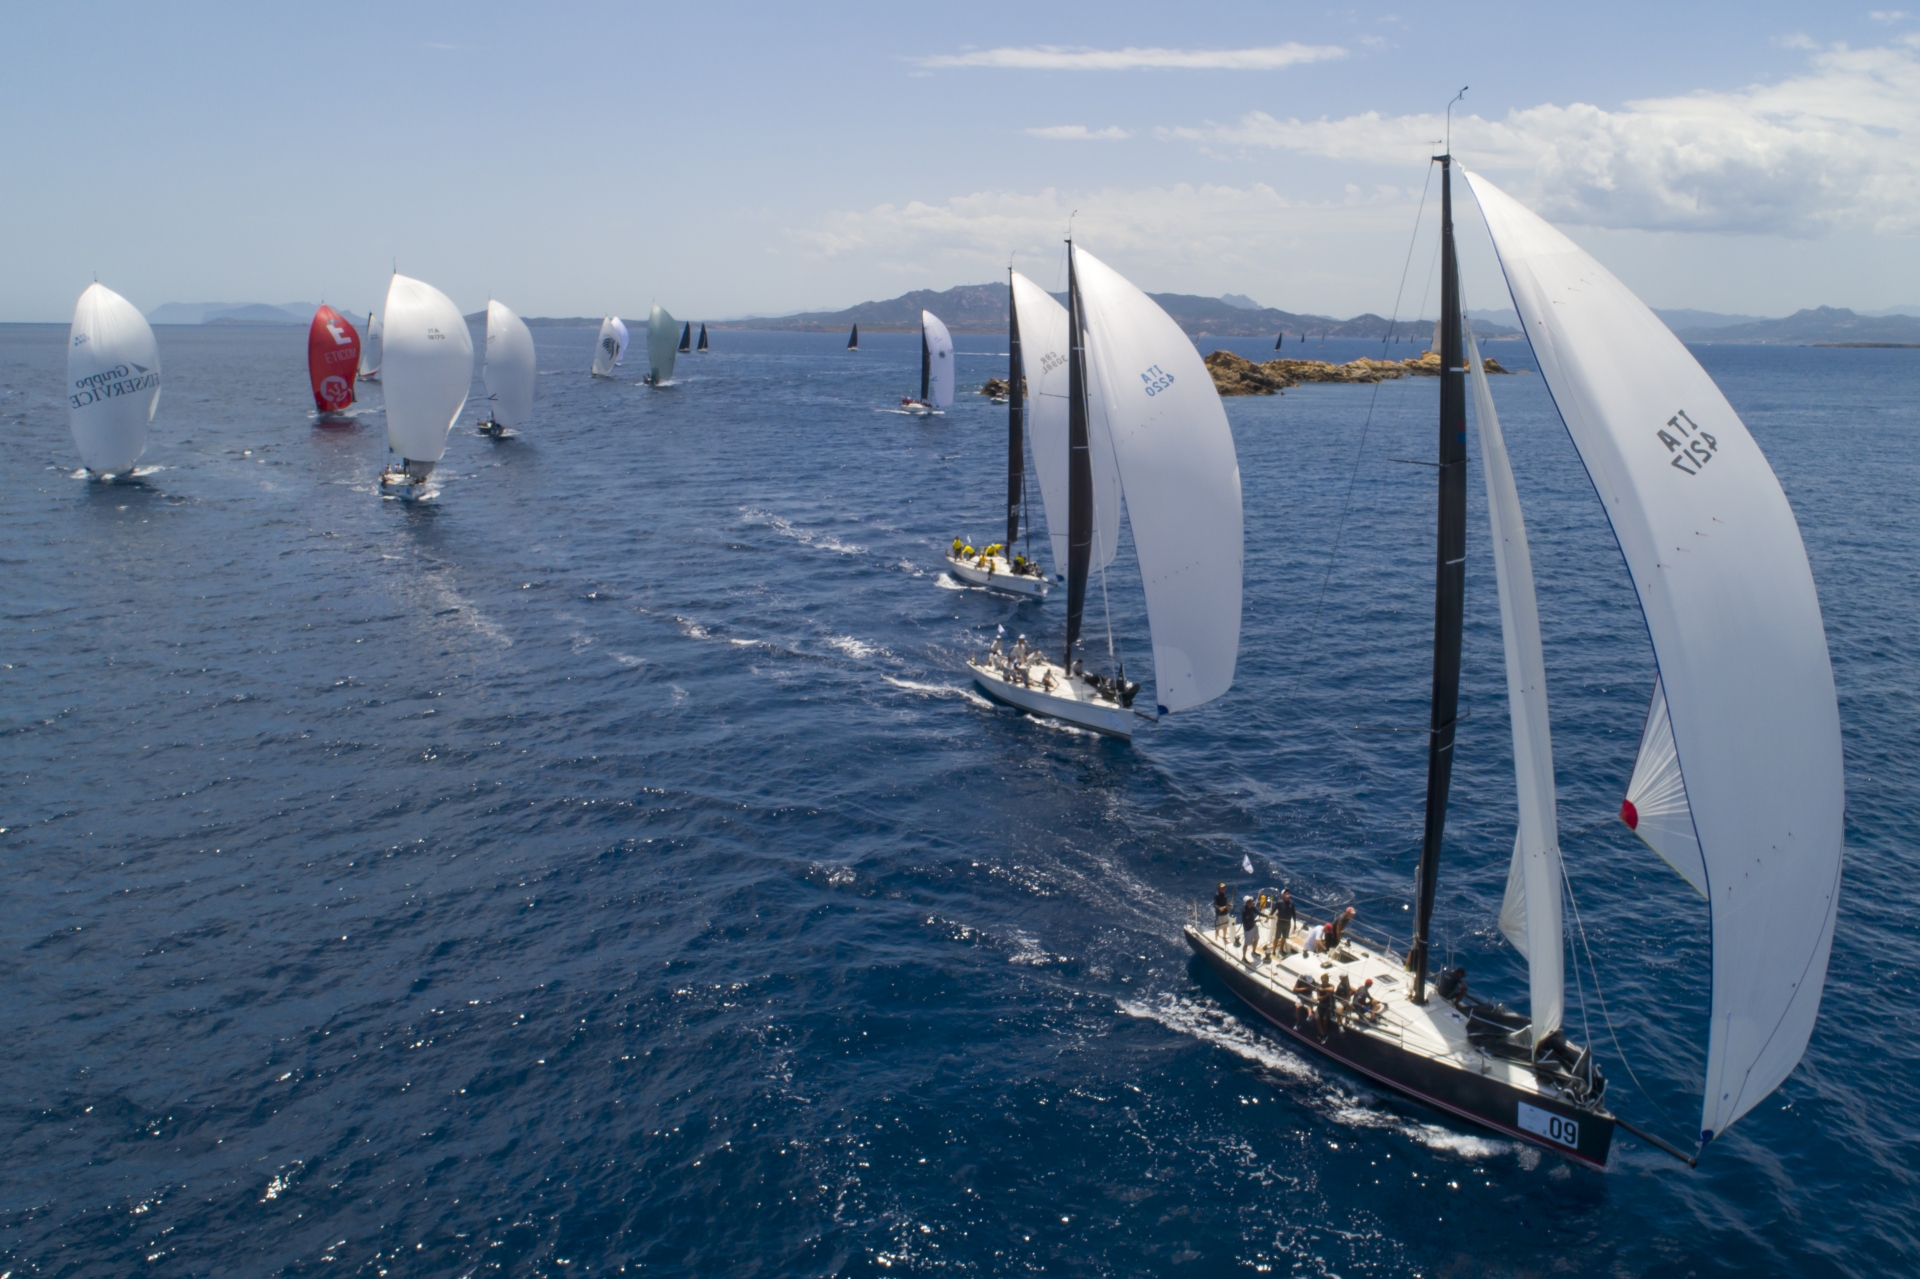 Campionato Mondiale ORC, in corso la regata lunga offshore - Comunicati Stampa - Yacht Club Costa Smeralda